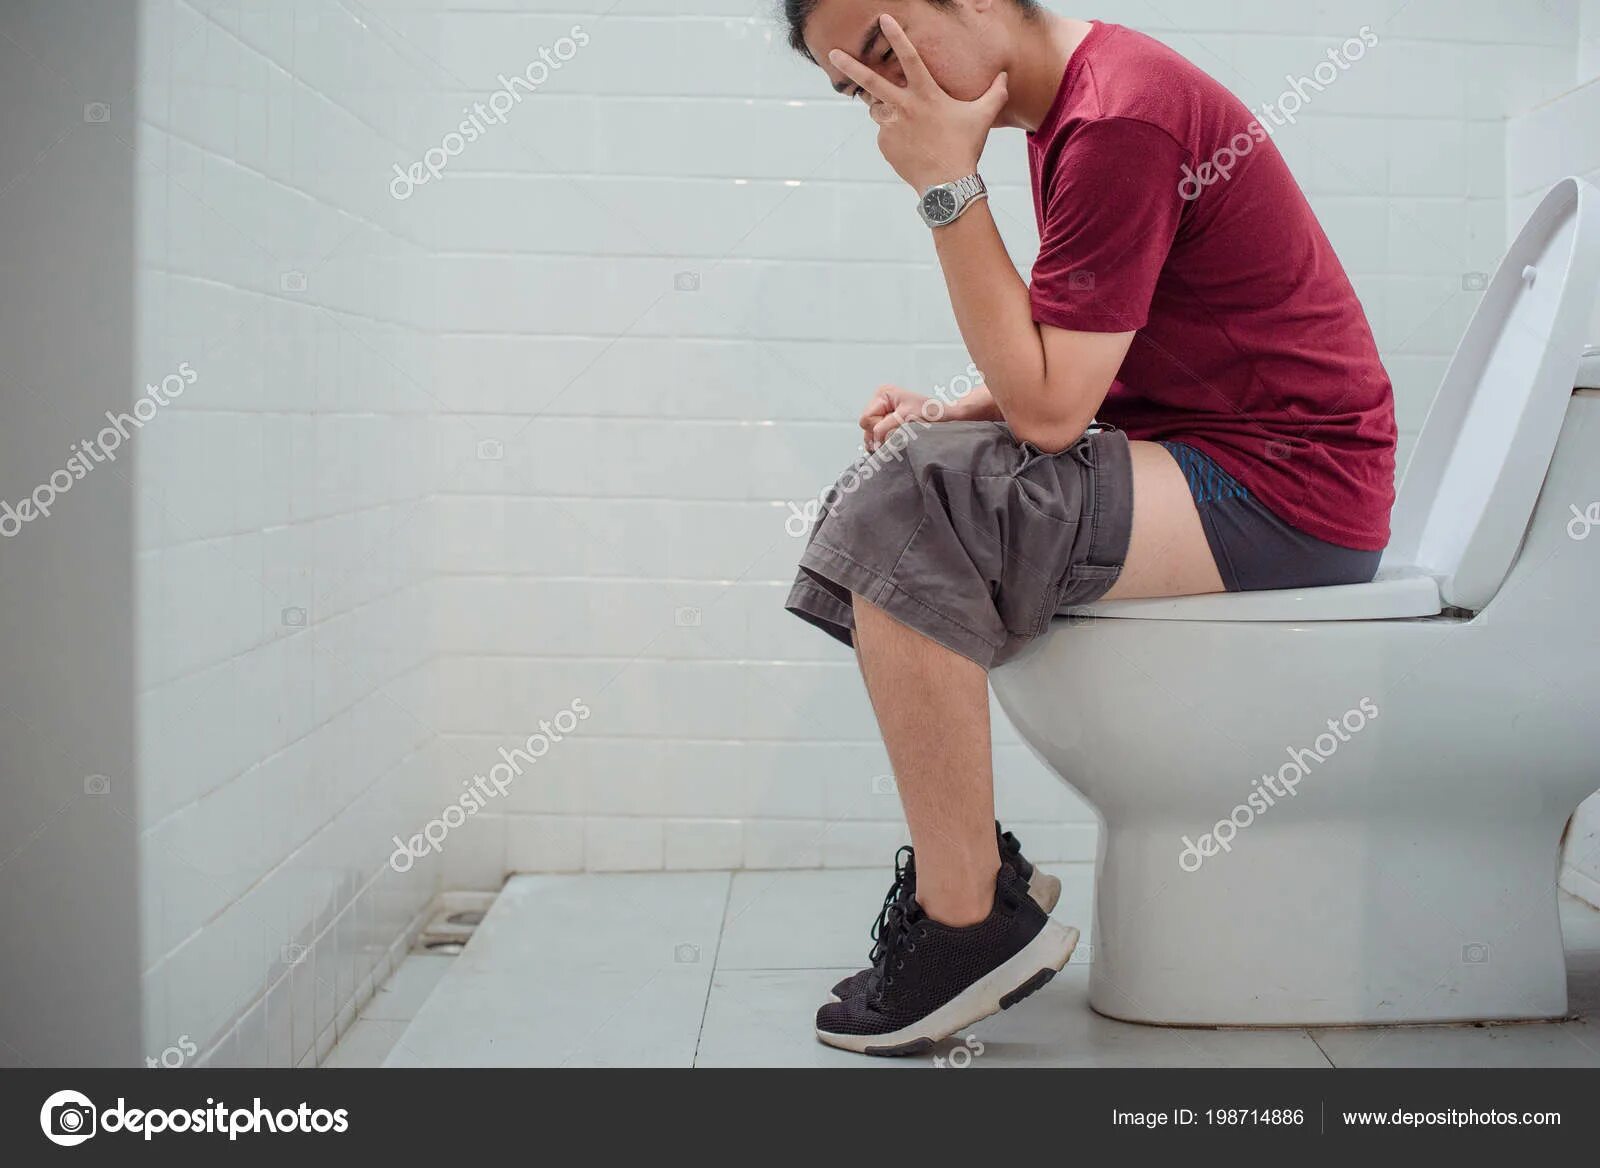 Терпеть туалет видео. Мальчик на унитазе. Туалет для мальчиков. Мальчик сидит на унитазе. Мальчик сидит в туалете.